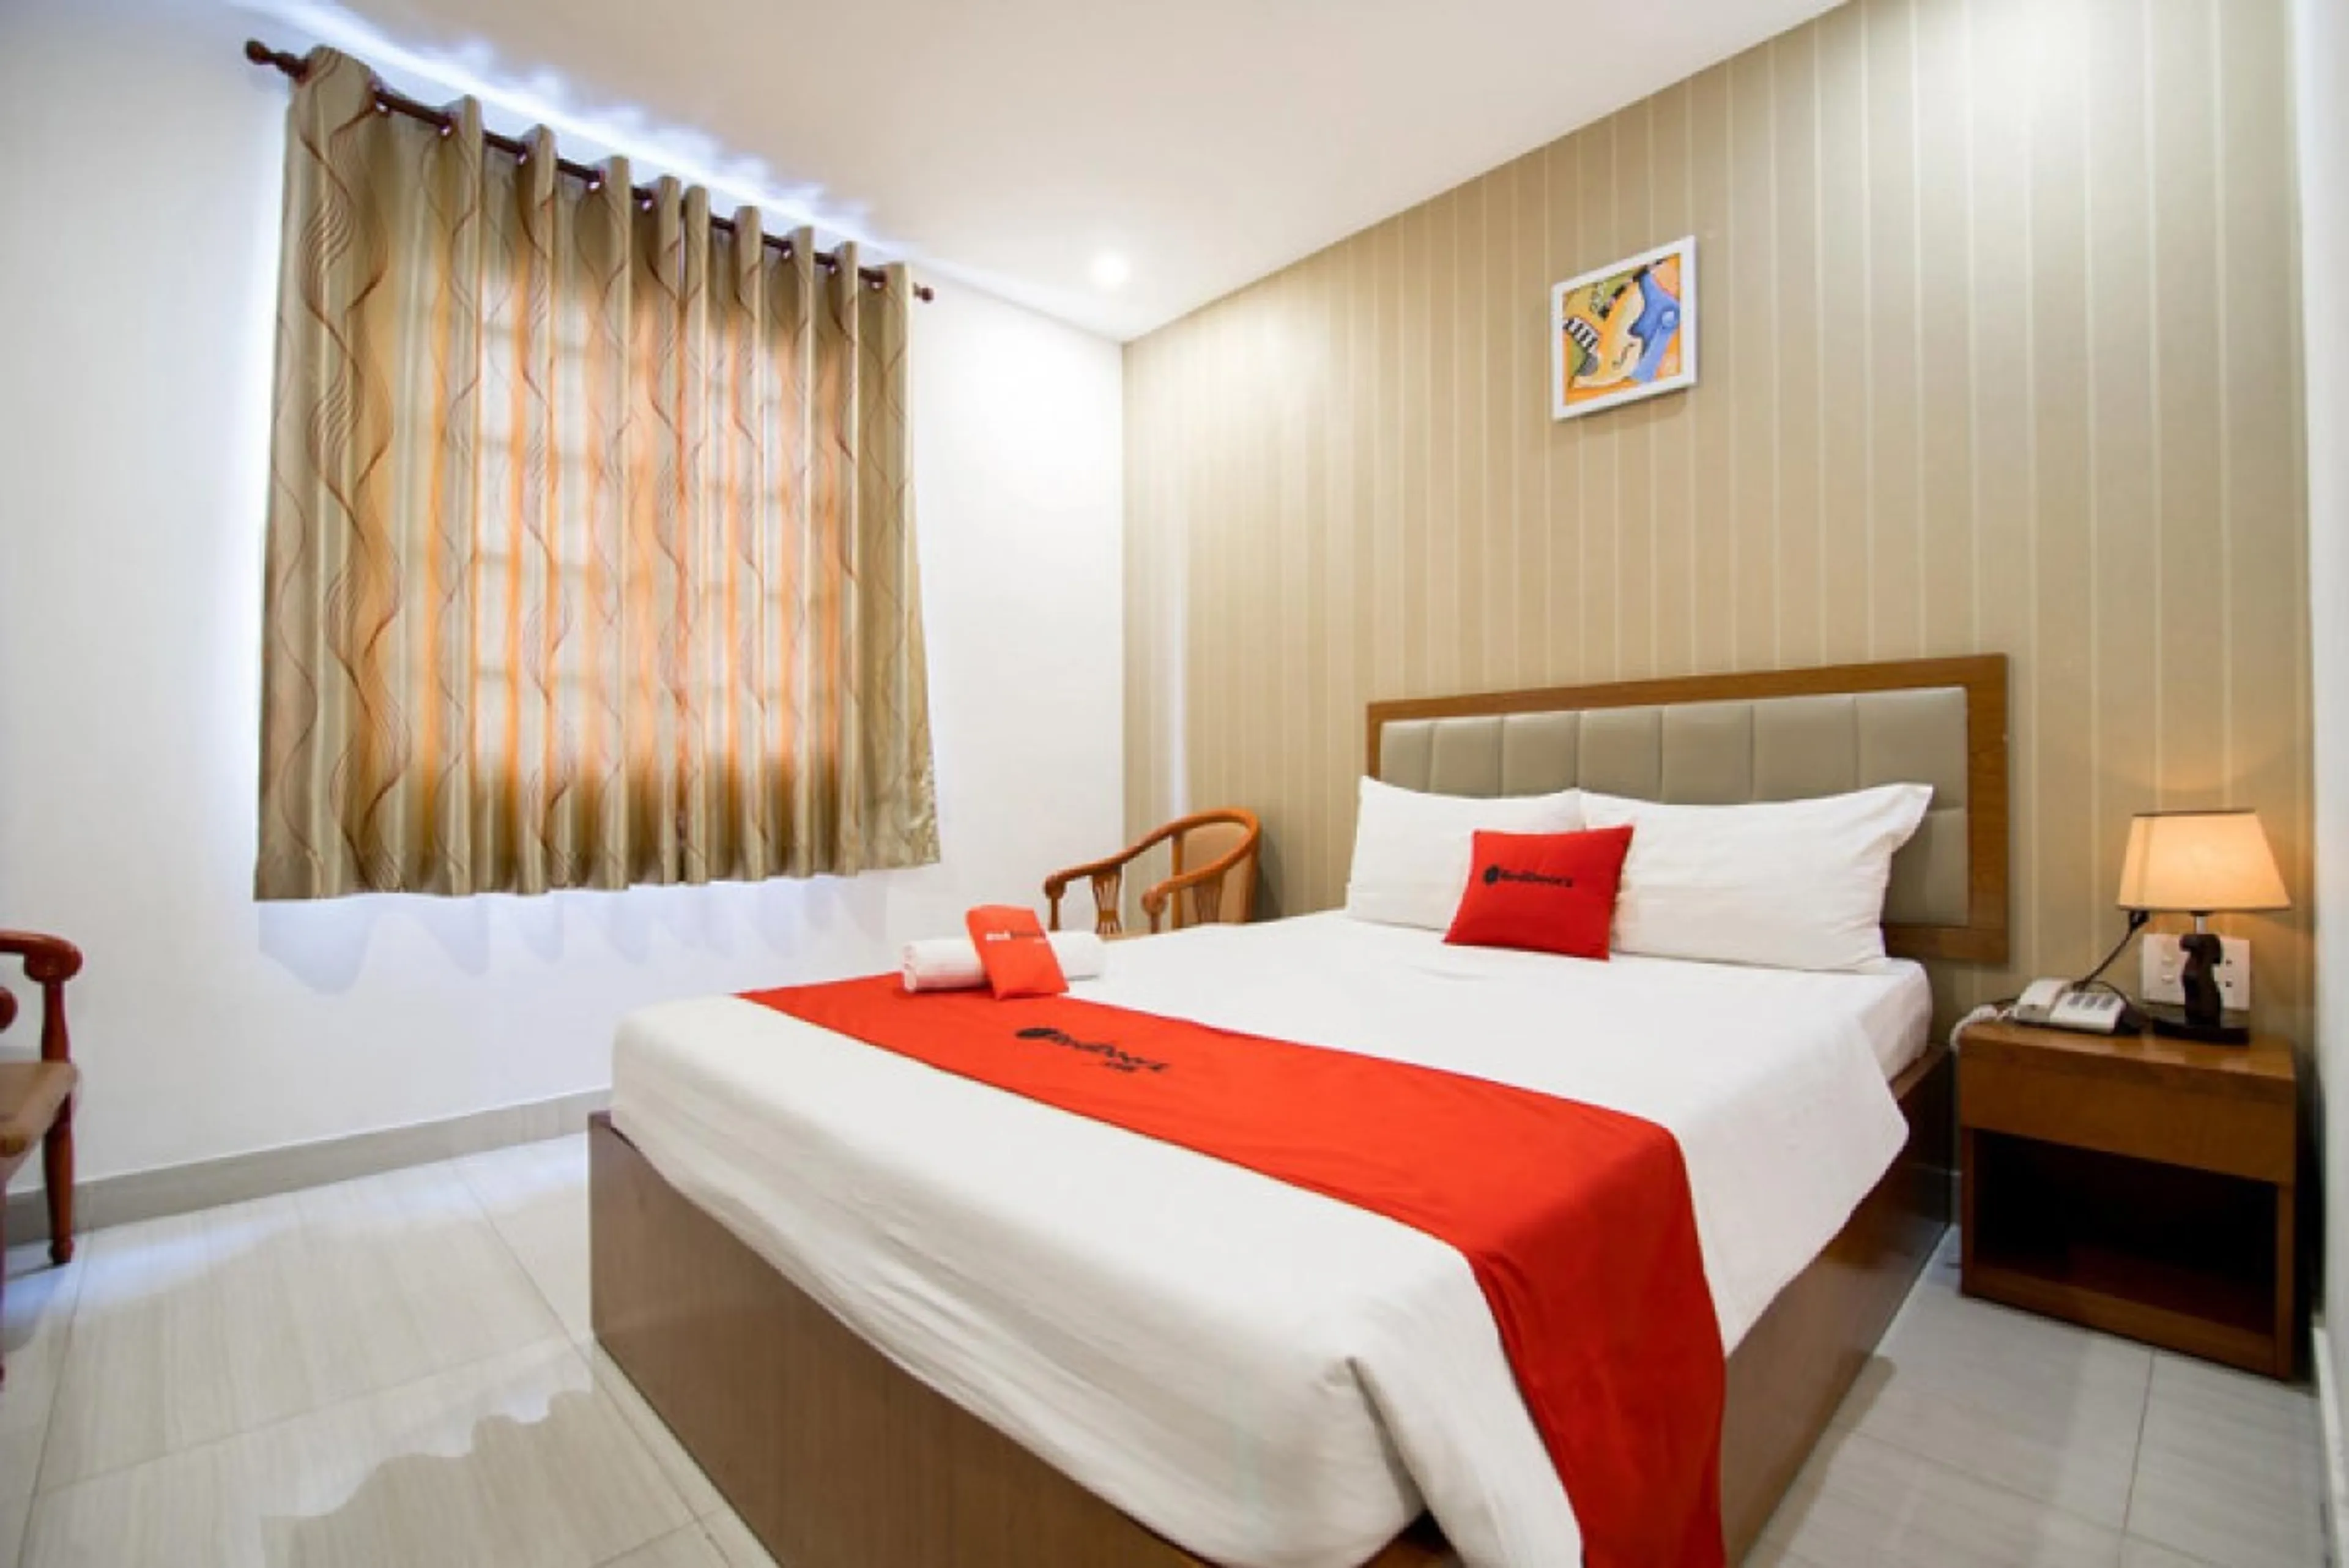  Không lo chốn nghỉ với nhiều khách sạn chất lượng giá rẻ ngay trong lòng Thành phố Cà Mau